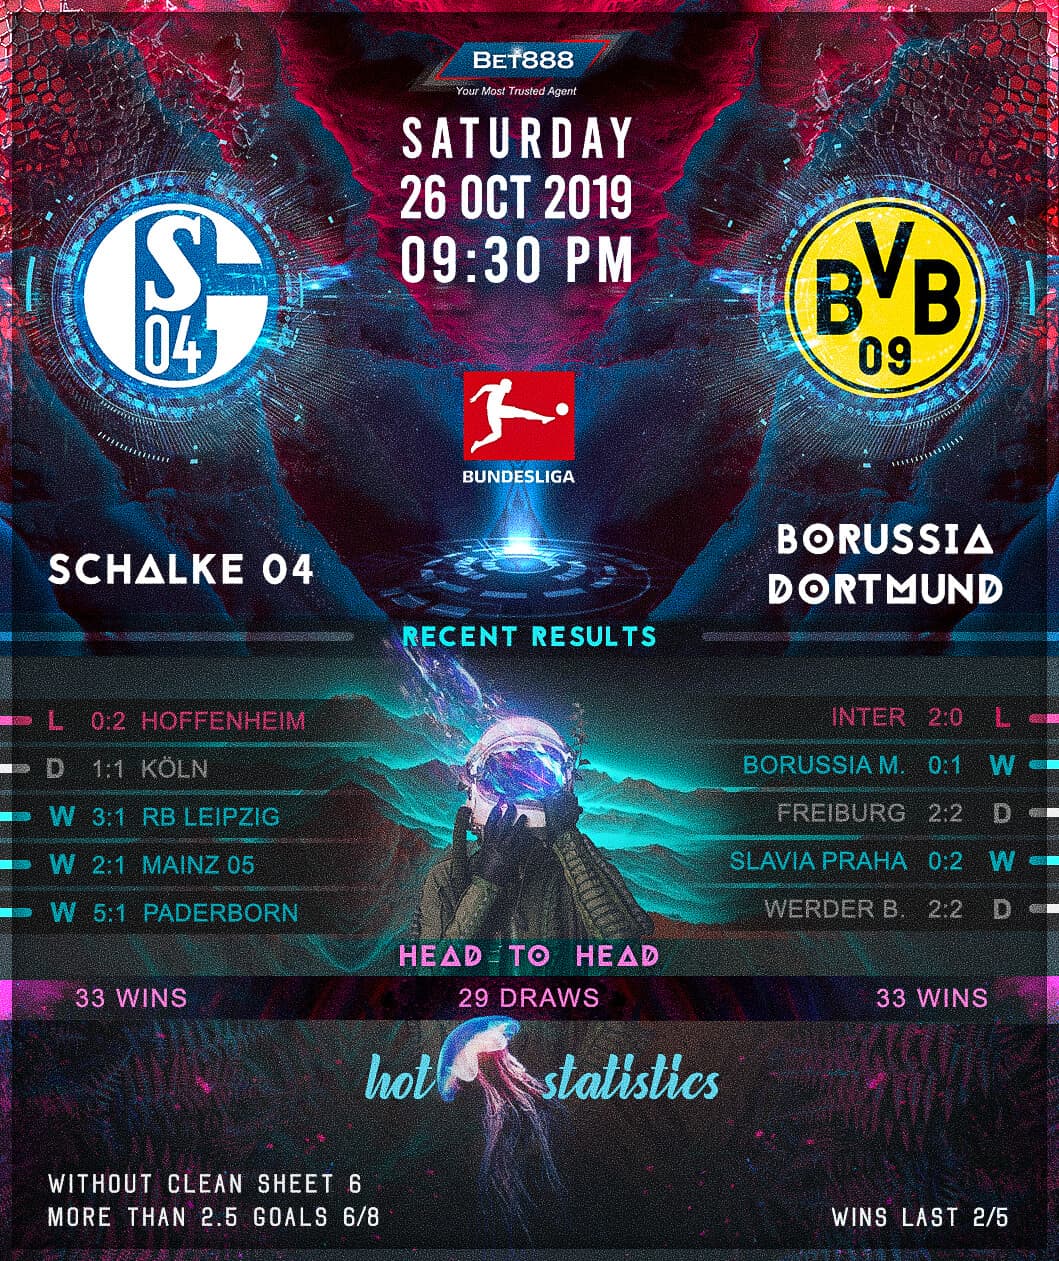 Schalke 04 vs Borussia Dortmund﻿ 26/10/19